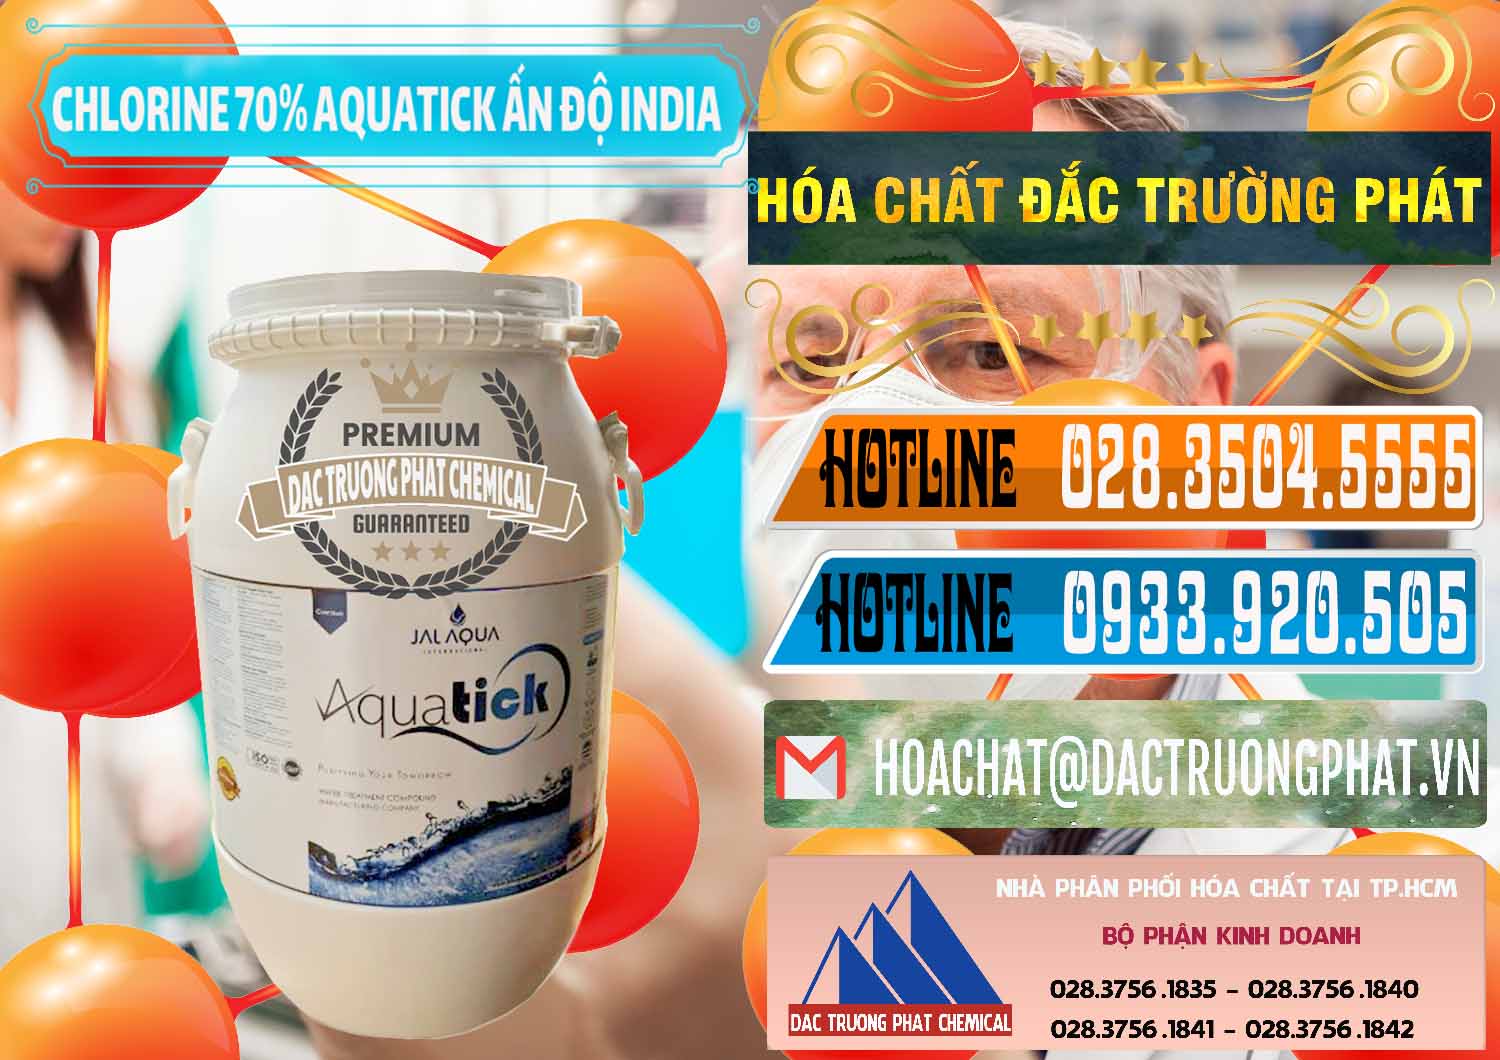 Cty bán và cung ứng Chlorine – Clorin 70% Aquatick Jal Aqua Ấn Độ India - 0215 - Phân phối _ cung ứng hóa chất tại TP.HCM - stmp.net